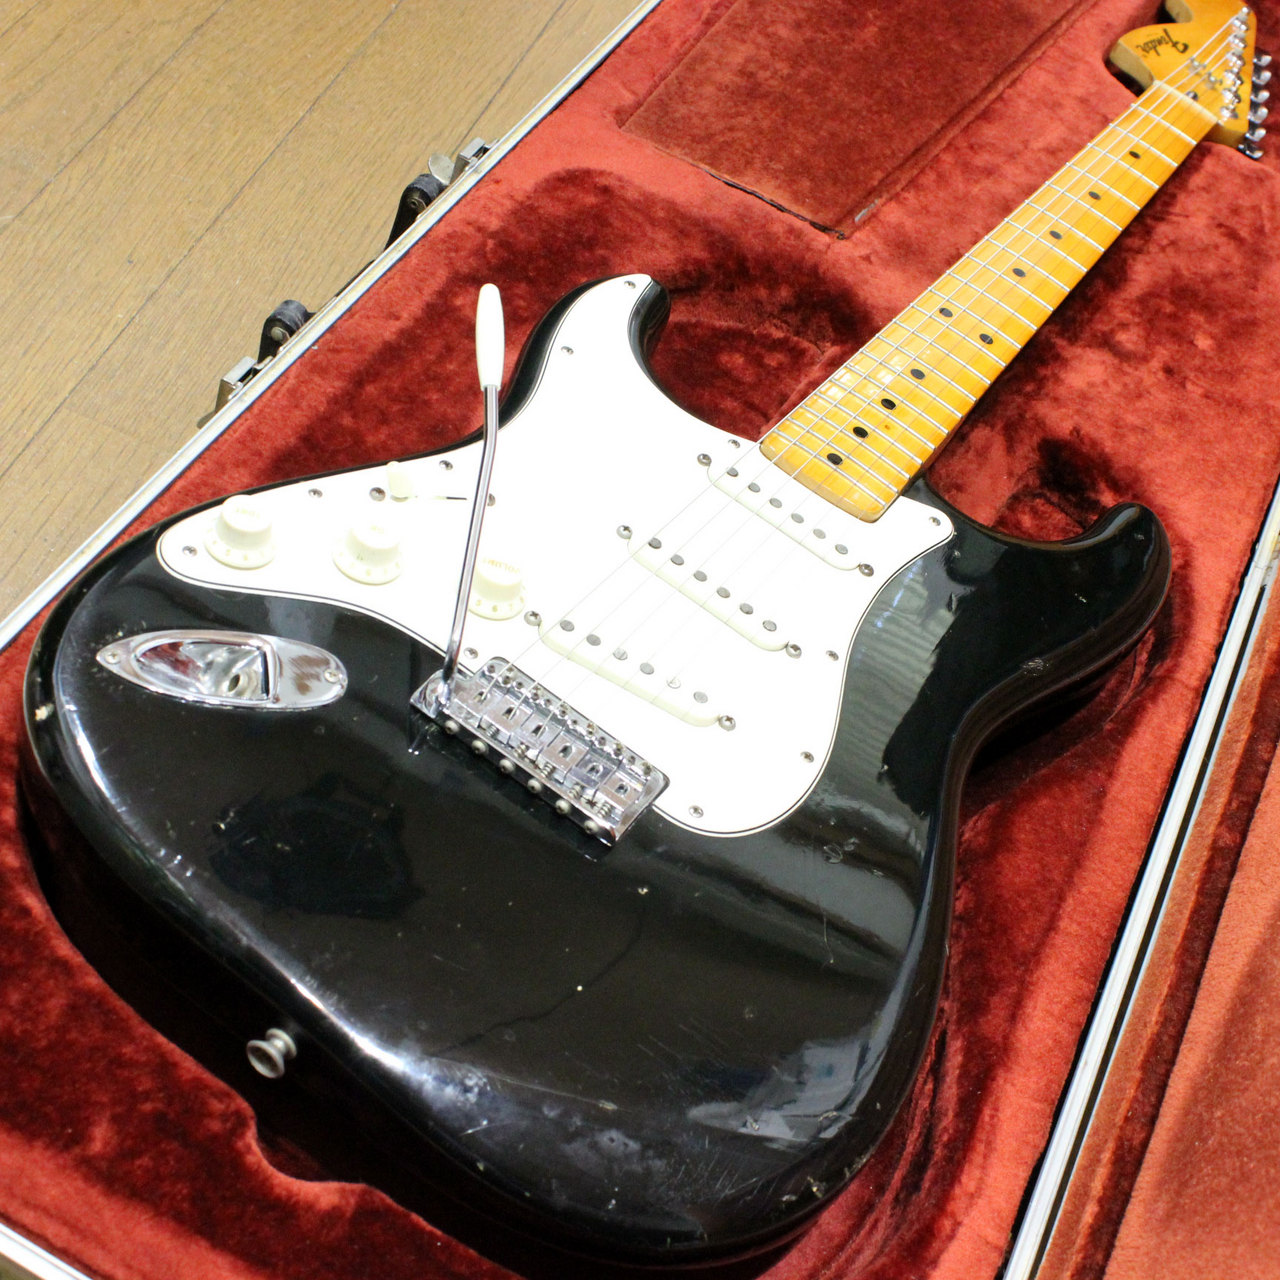 Fender 1975 ストラトキャスター ヴィンテージ